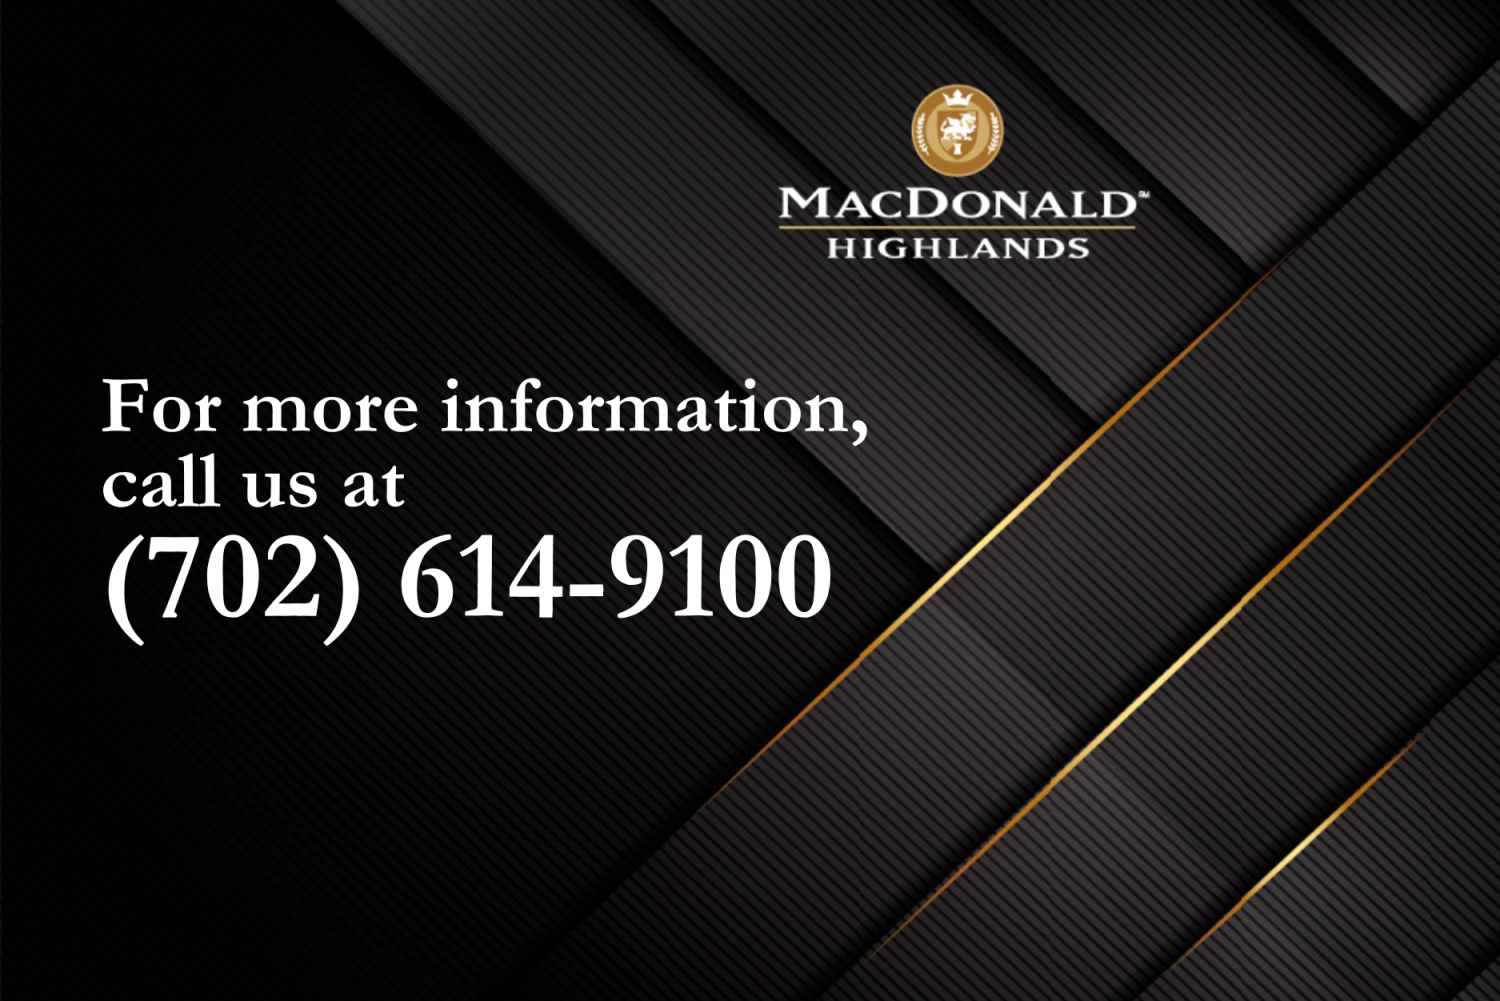 call macdonald highlands 702-614 9100
